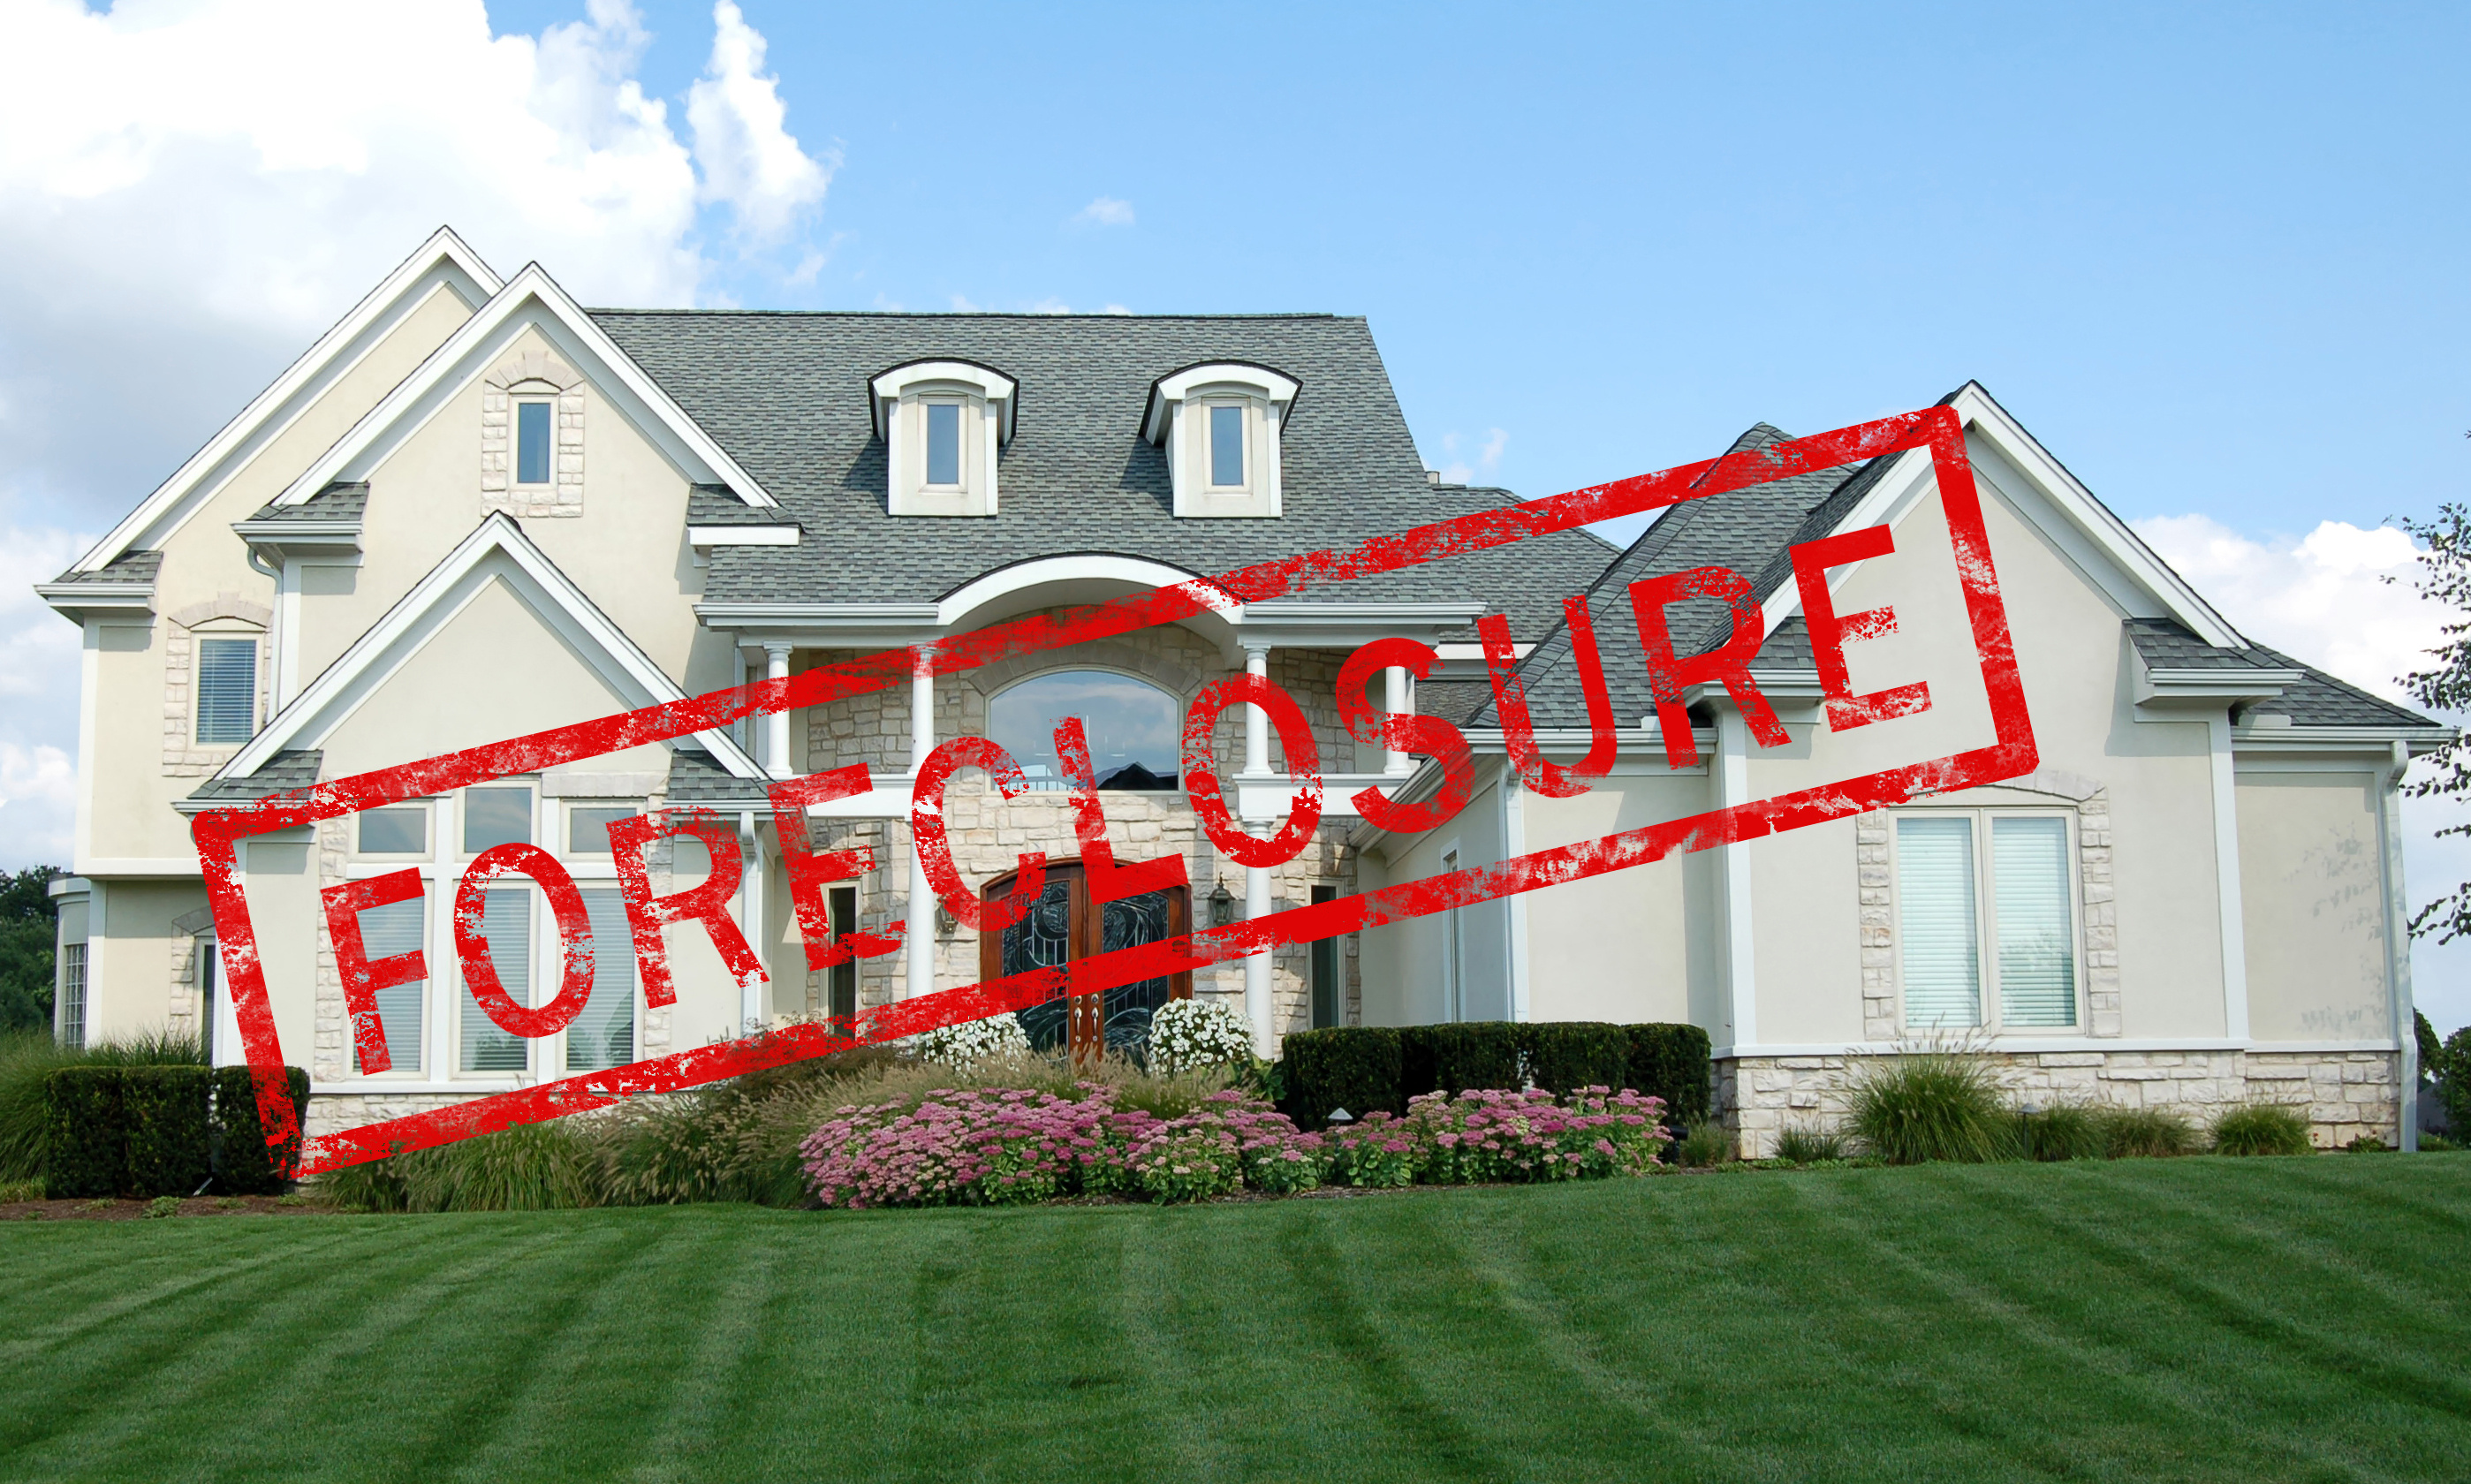 Call D&D Appraisals, LLC. to order appraisals regarding Webster foreclosures